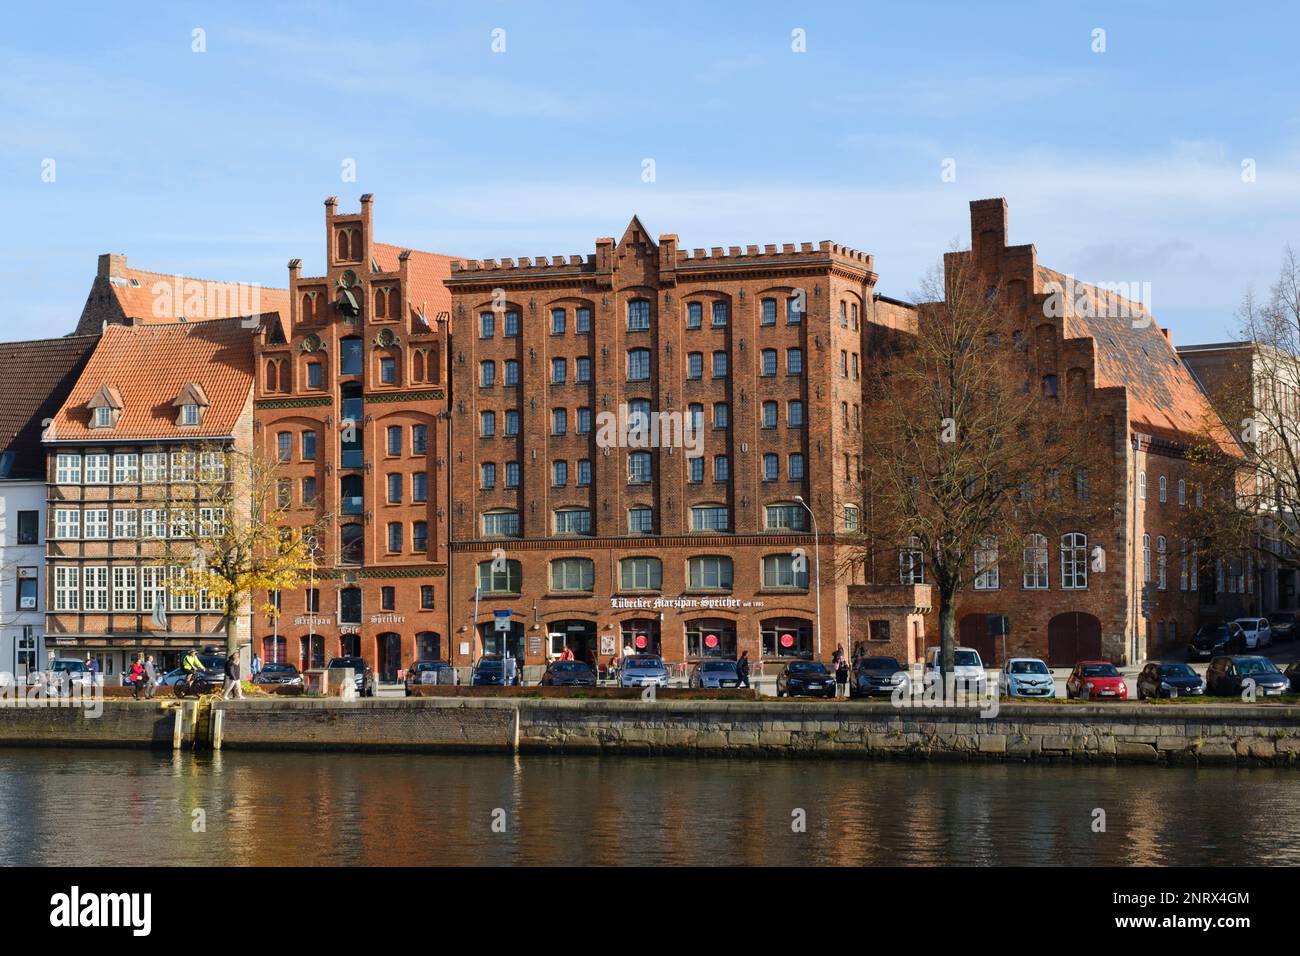 Gebäude in der Altstadt an der Trave, Lübeck, UNESCO-Weltkulturerbe, Schleswig-Holstein, Deutschland, Europa Stockfoto